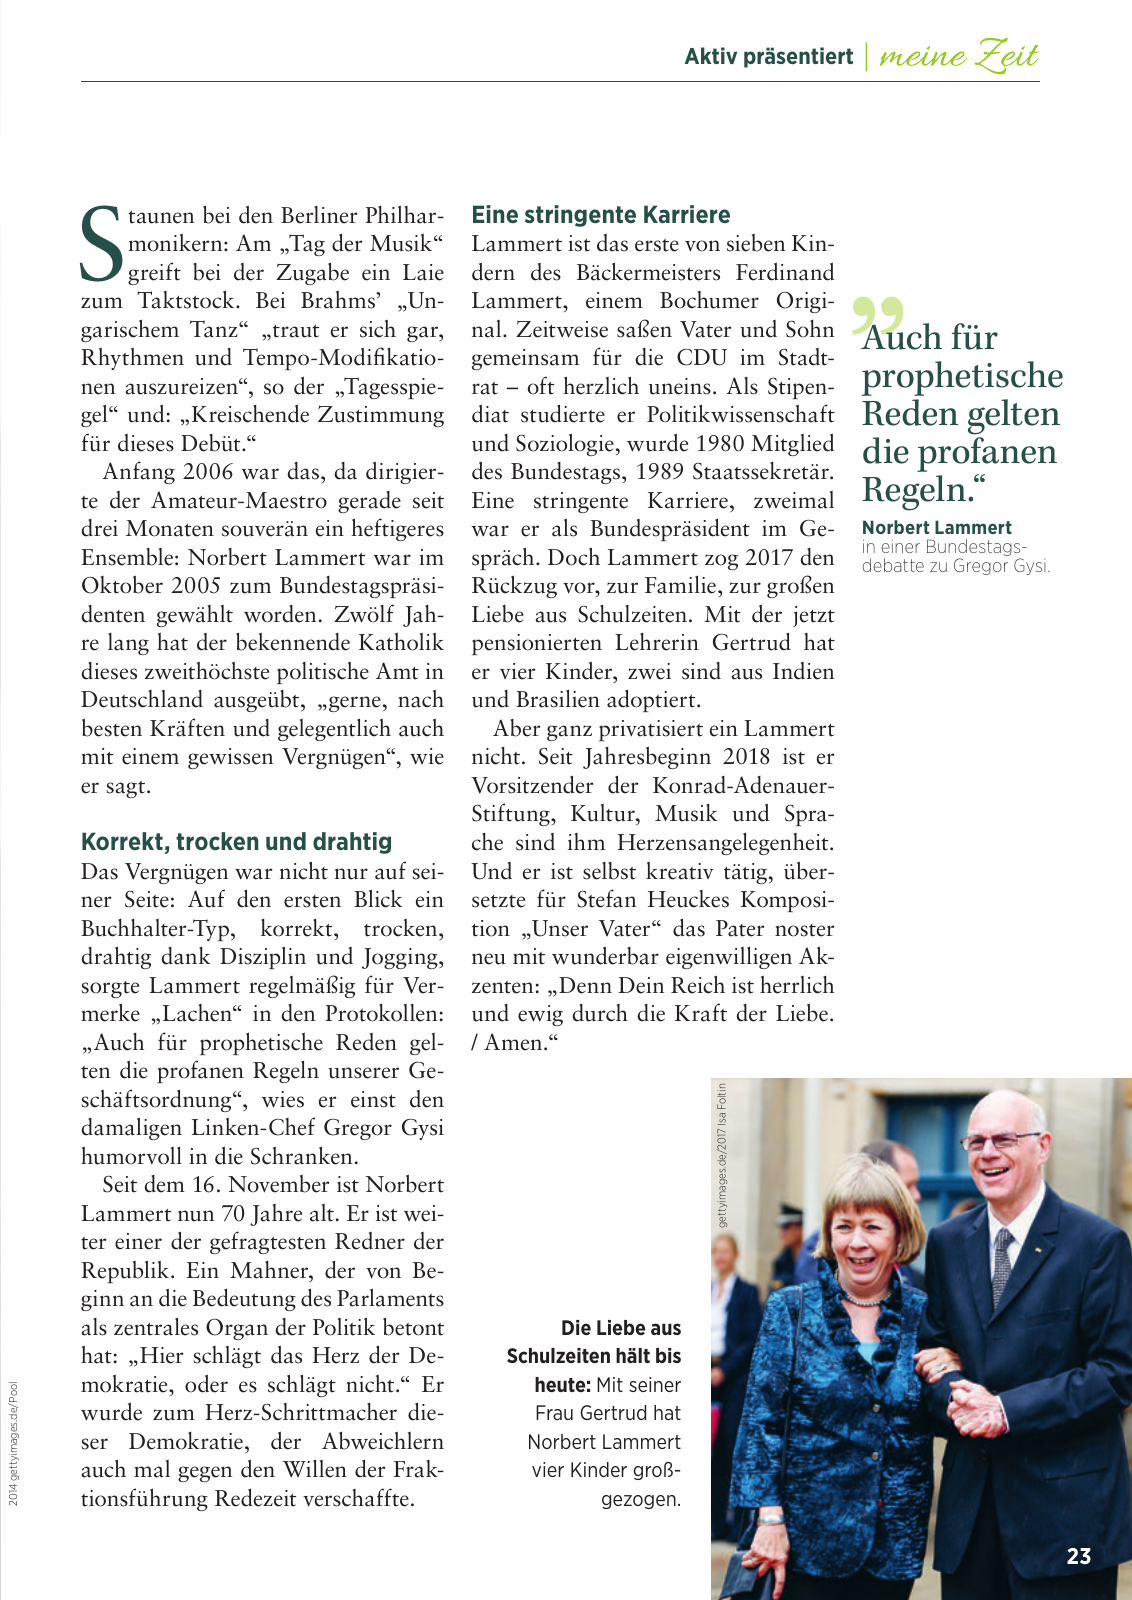 Vorschau 2018_GDA06_Goettingen Seite 23